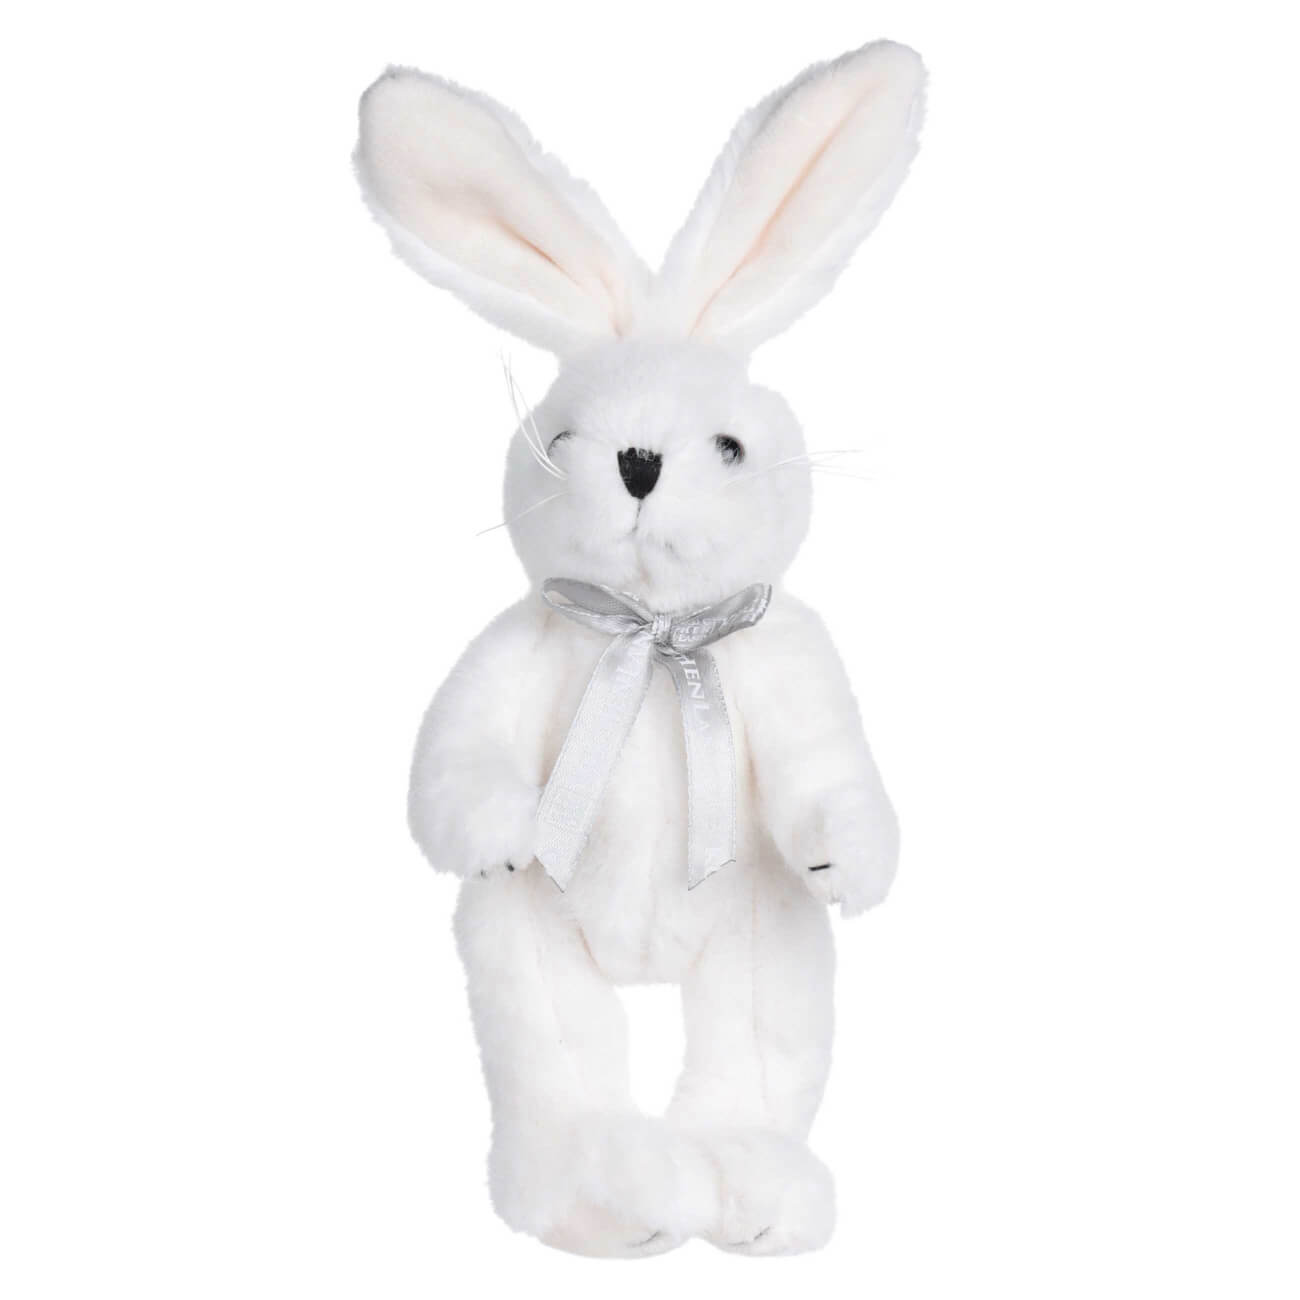 Игрушка, 20 см, мягкая, с подвижными лапами, полиэстер, белая, Кролик, Rabbit toy мягкая игрушка lucky yoyo элегантность с каркасом 37 см